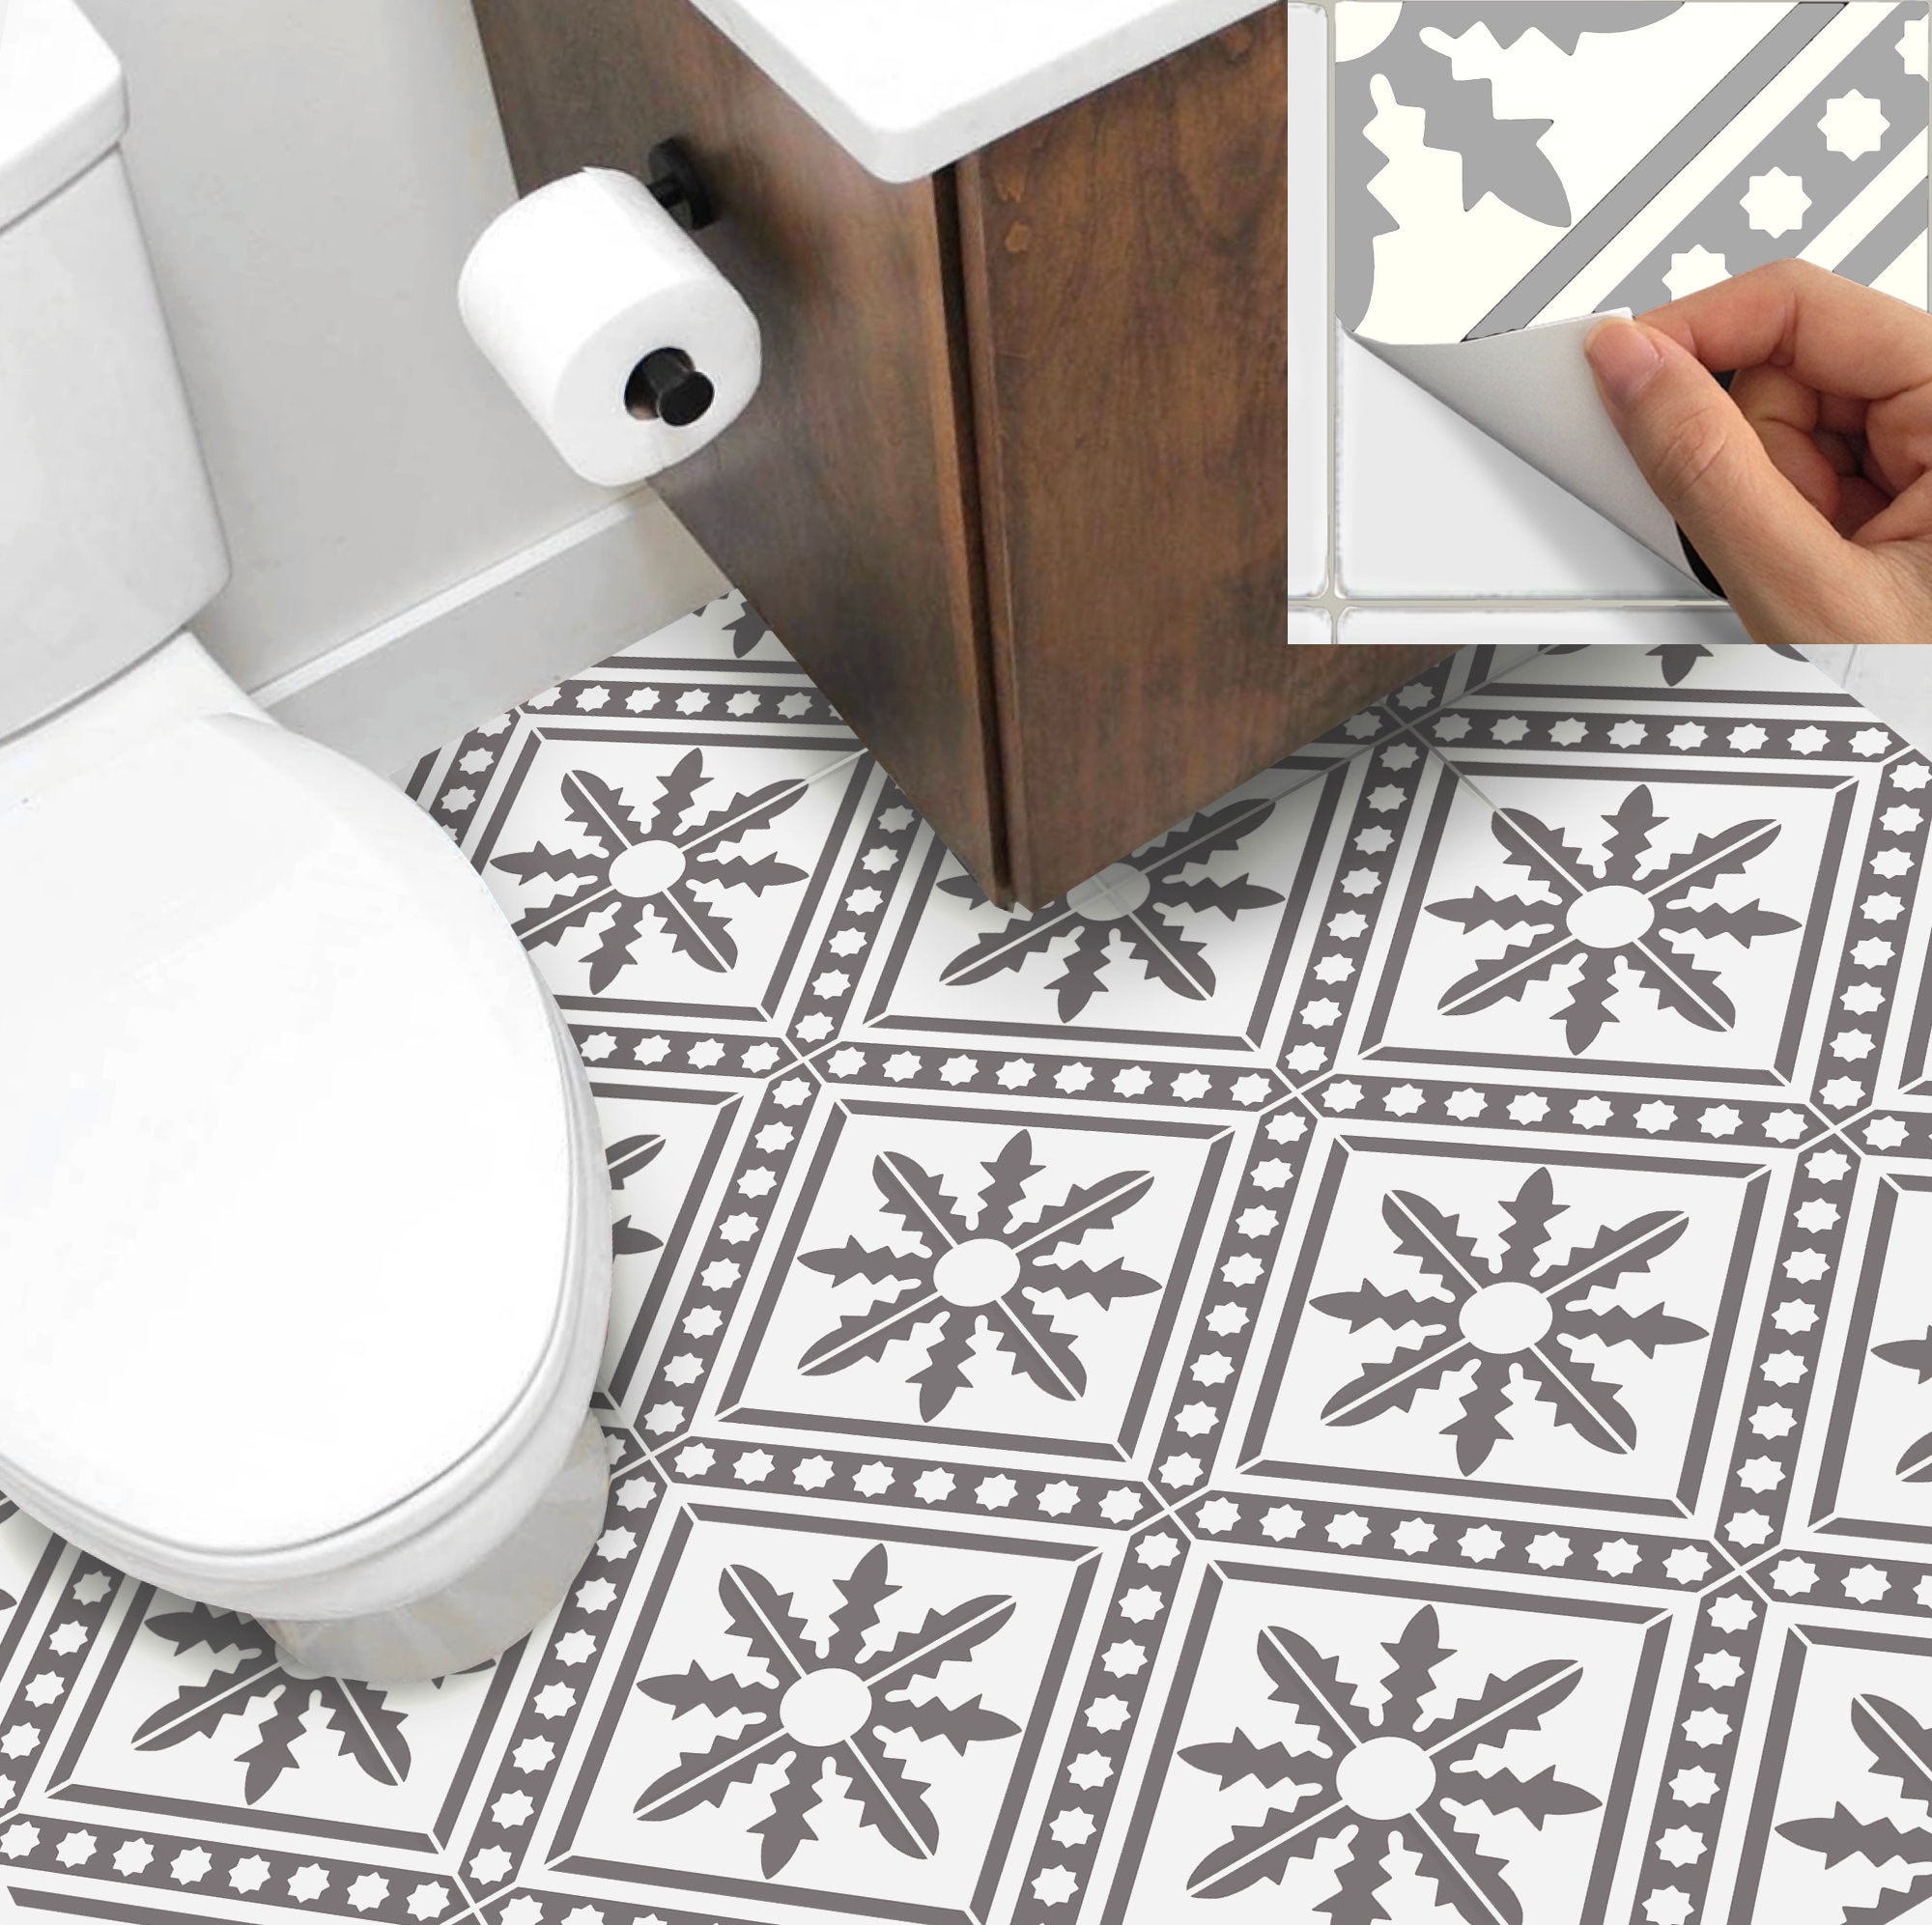 1 set / 6 pezzi adesivi murali creativi in &8203&8203pasta di piastrelle  cucina decorazione del pavimento del bagno (tipo E 6 pezzi)